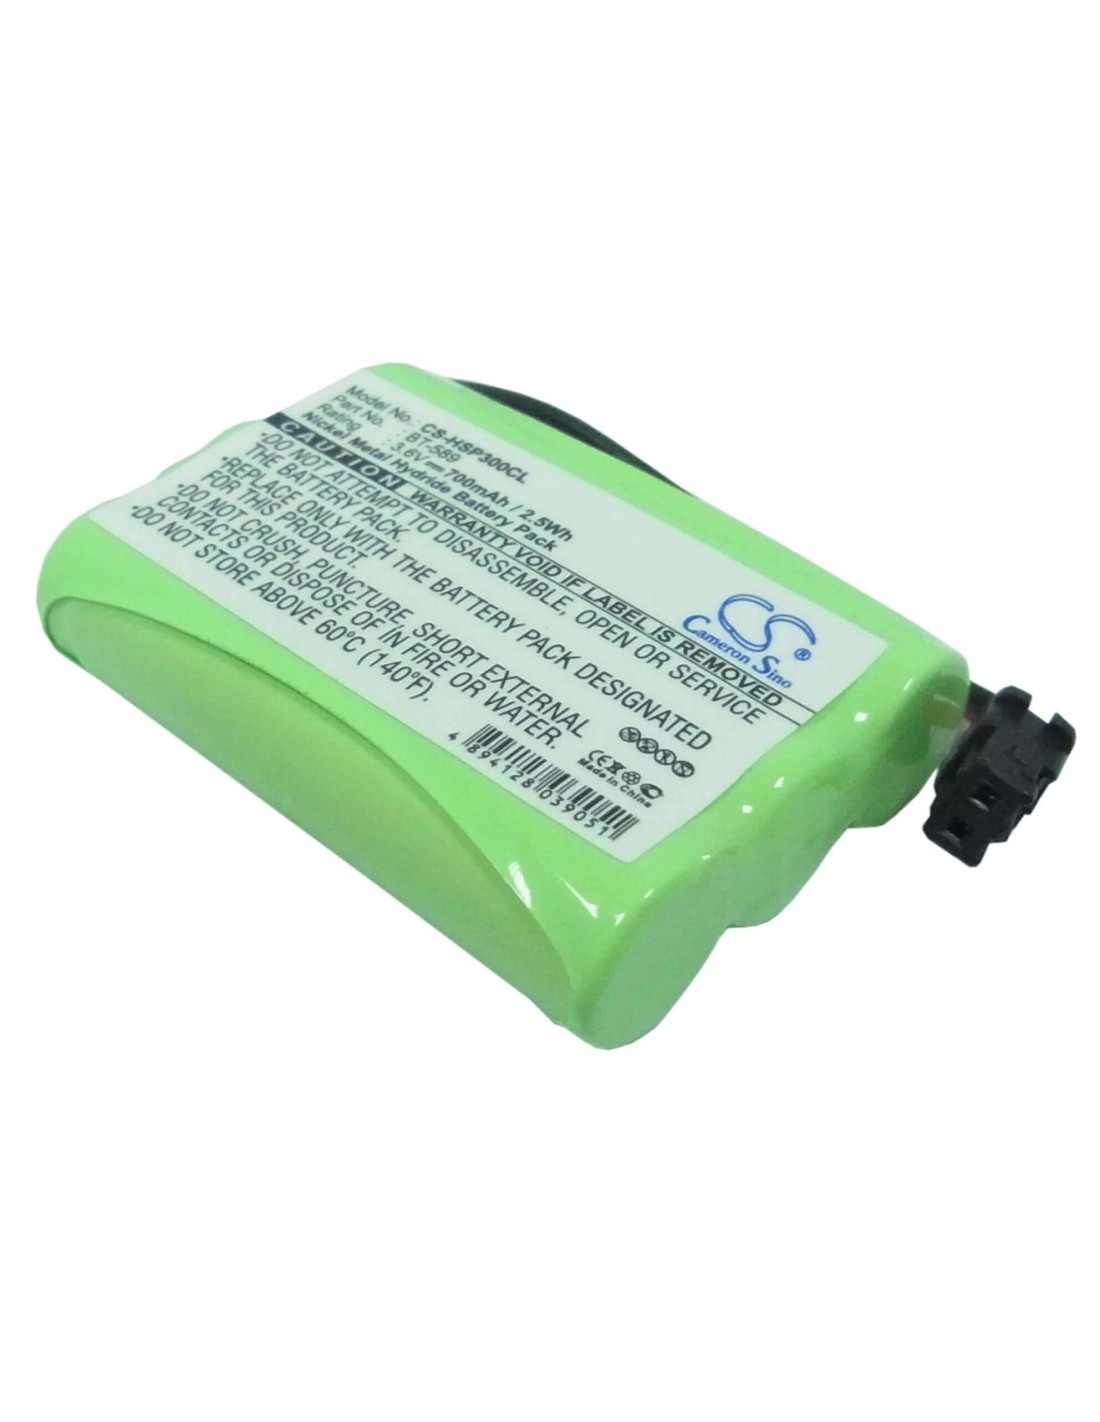 Battery for Hagenuk, Sl30080, Wp 300x 3.6V, 700mAh - 2.52Wh